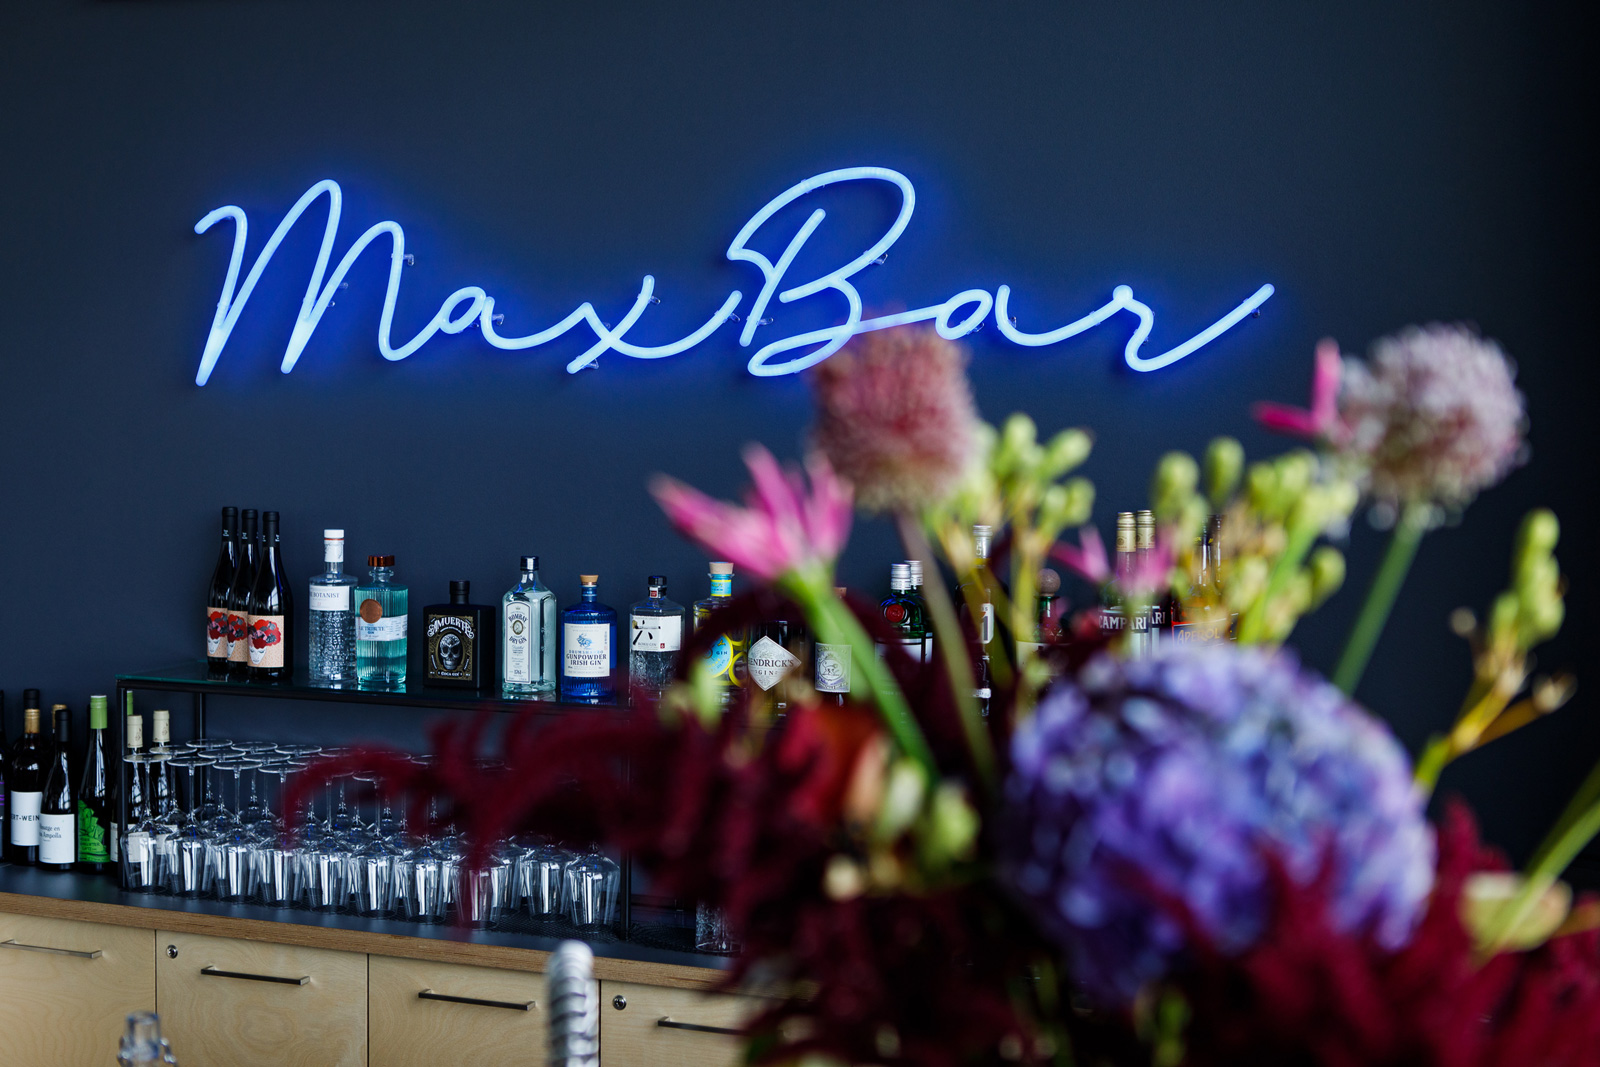 Die neue Bar im Max Café, mit blauer Wand, blauer Neonleuchte als Schriftzug und modernem Look